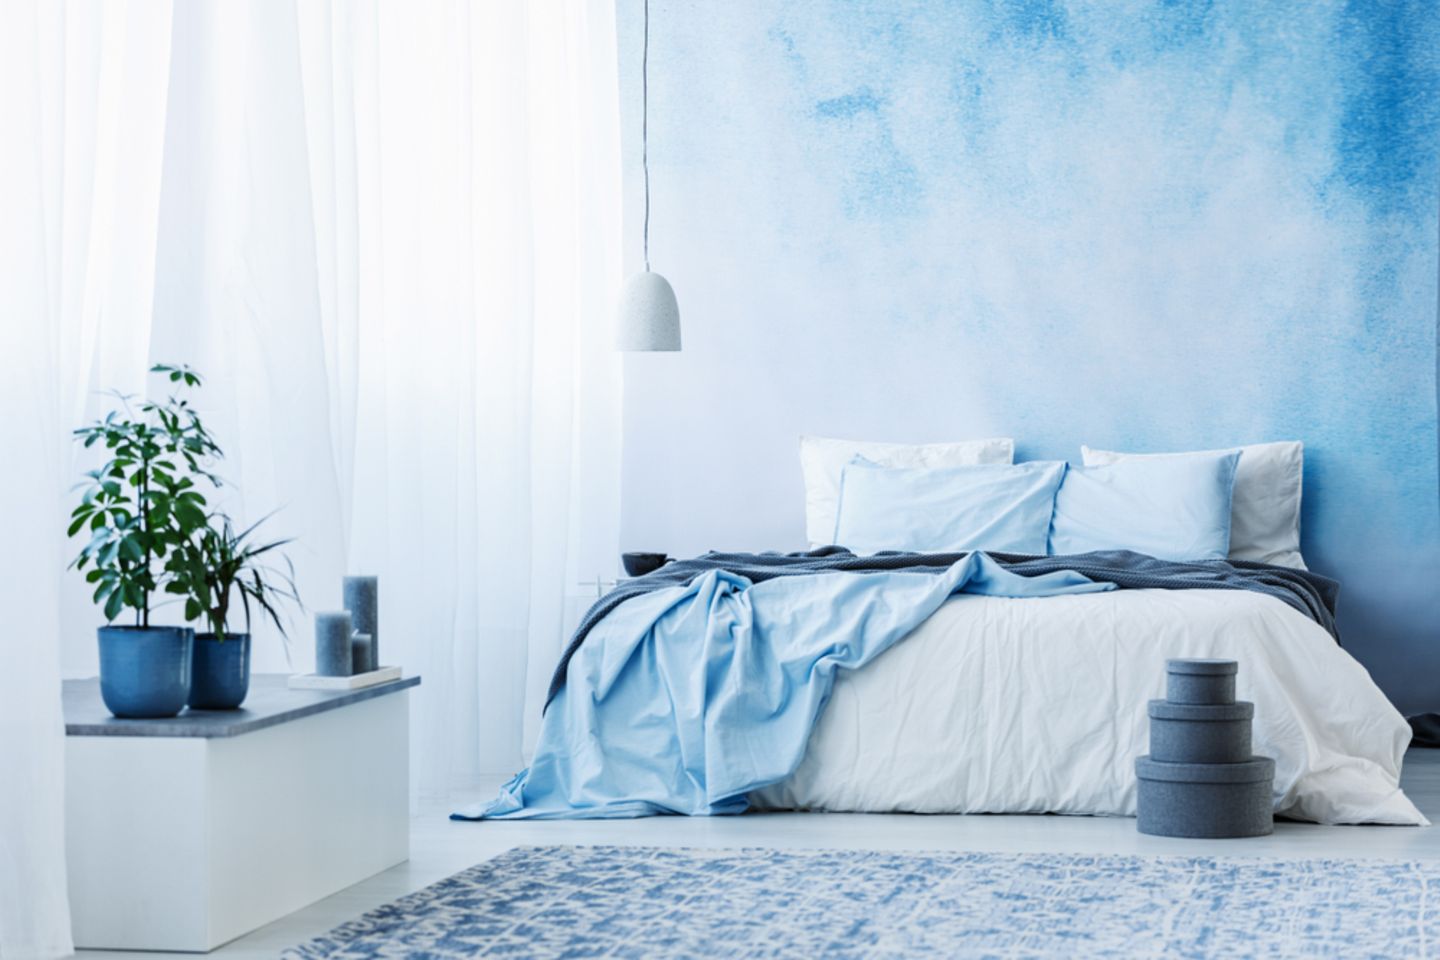 Wandgestaltung Schlafzimmer: 11 kreative Ideen  BRIGITTE.de